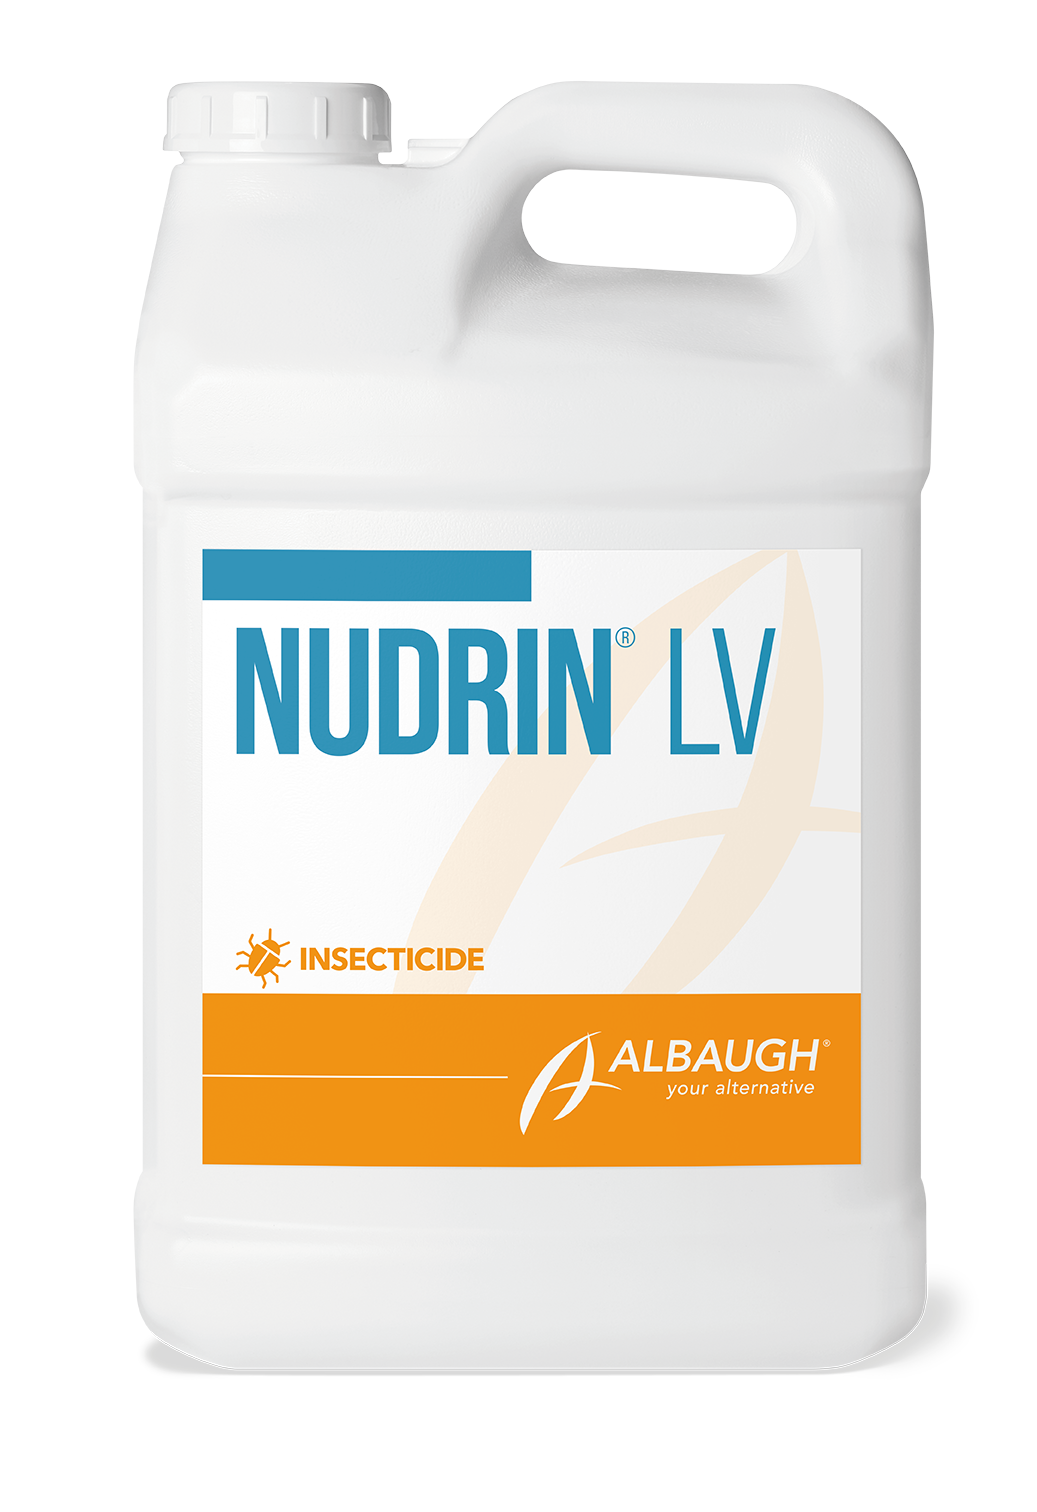 Nudrin® LV